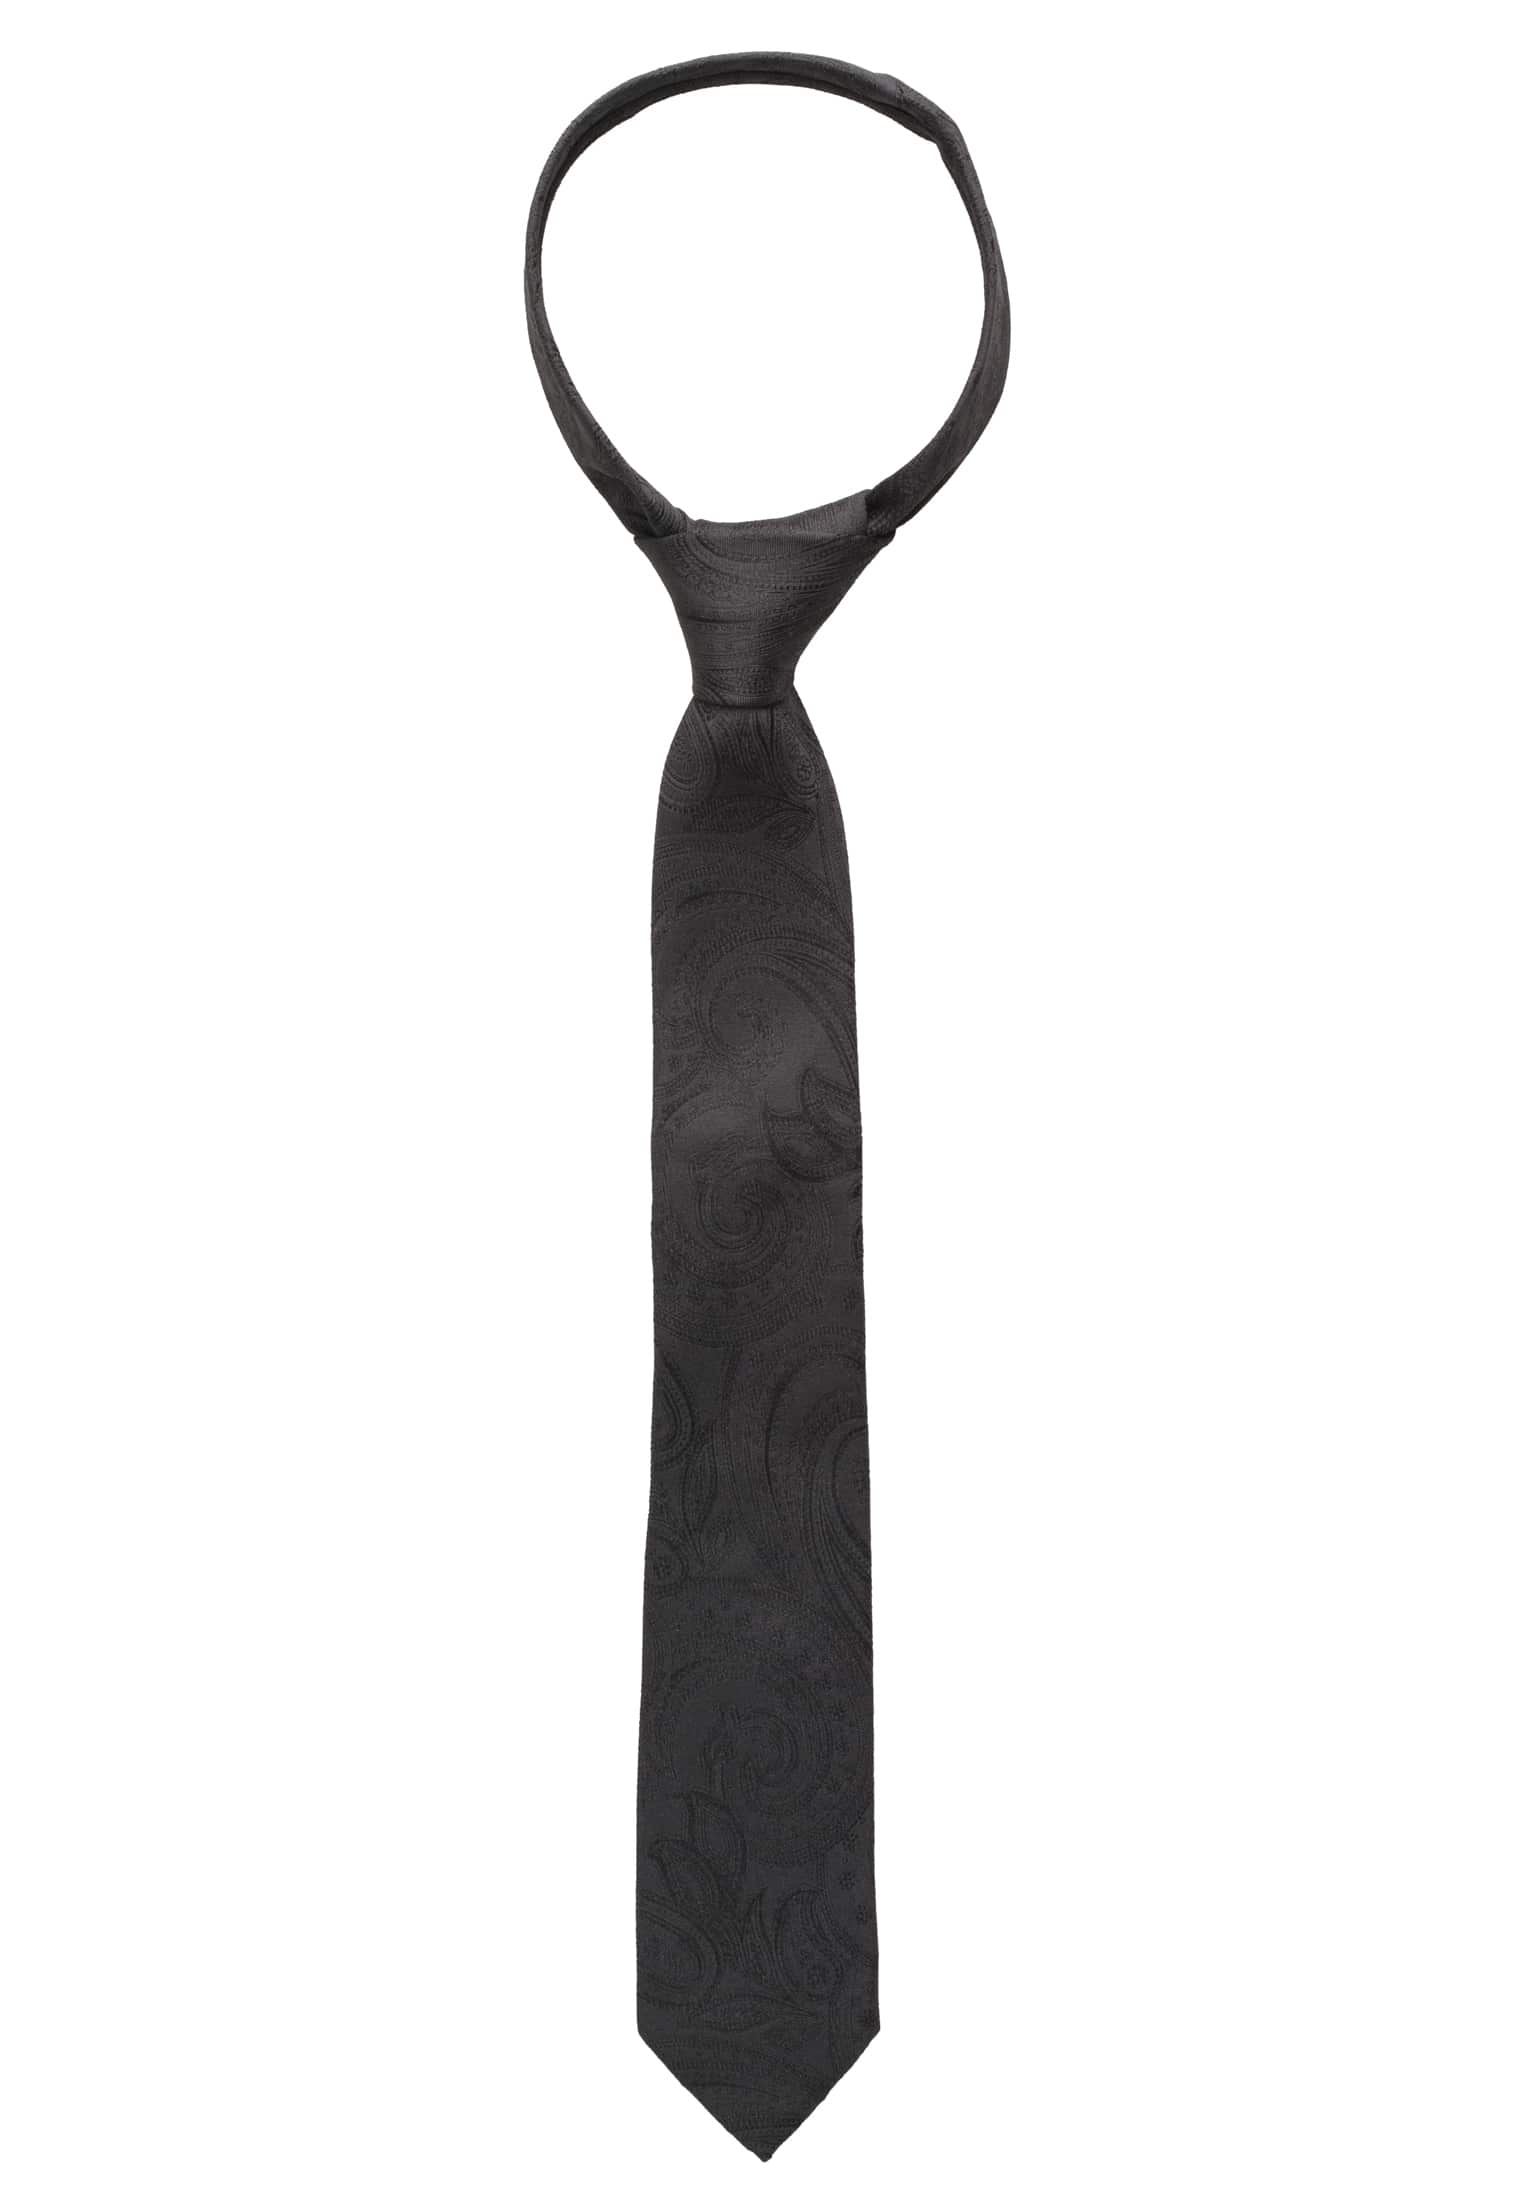 Krawatte in schwarz gemustert | schwarz | 160 | 1AC01869-03-91-160